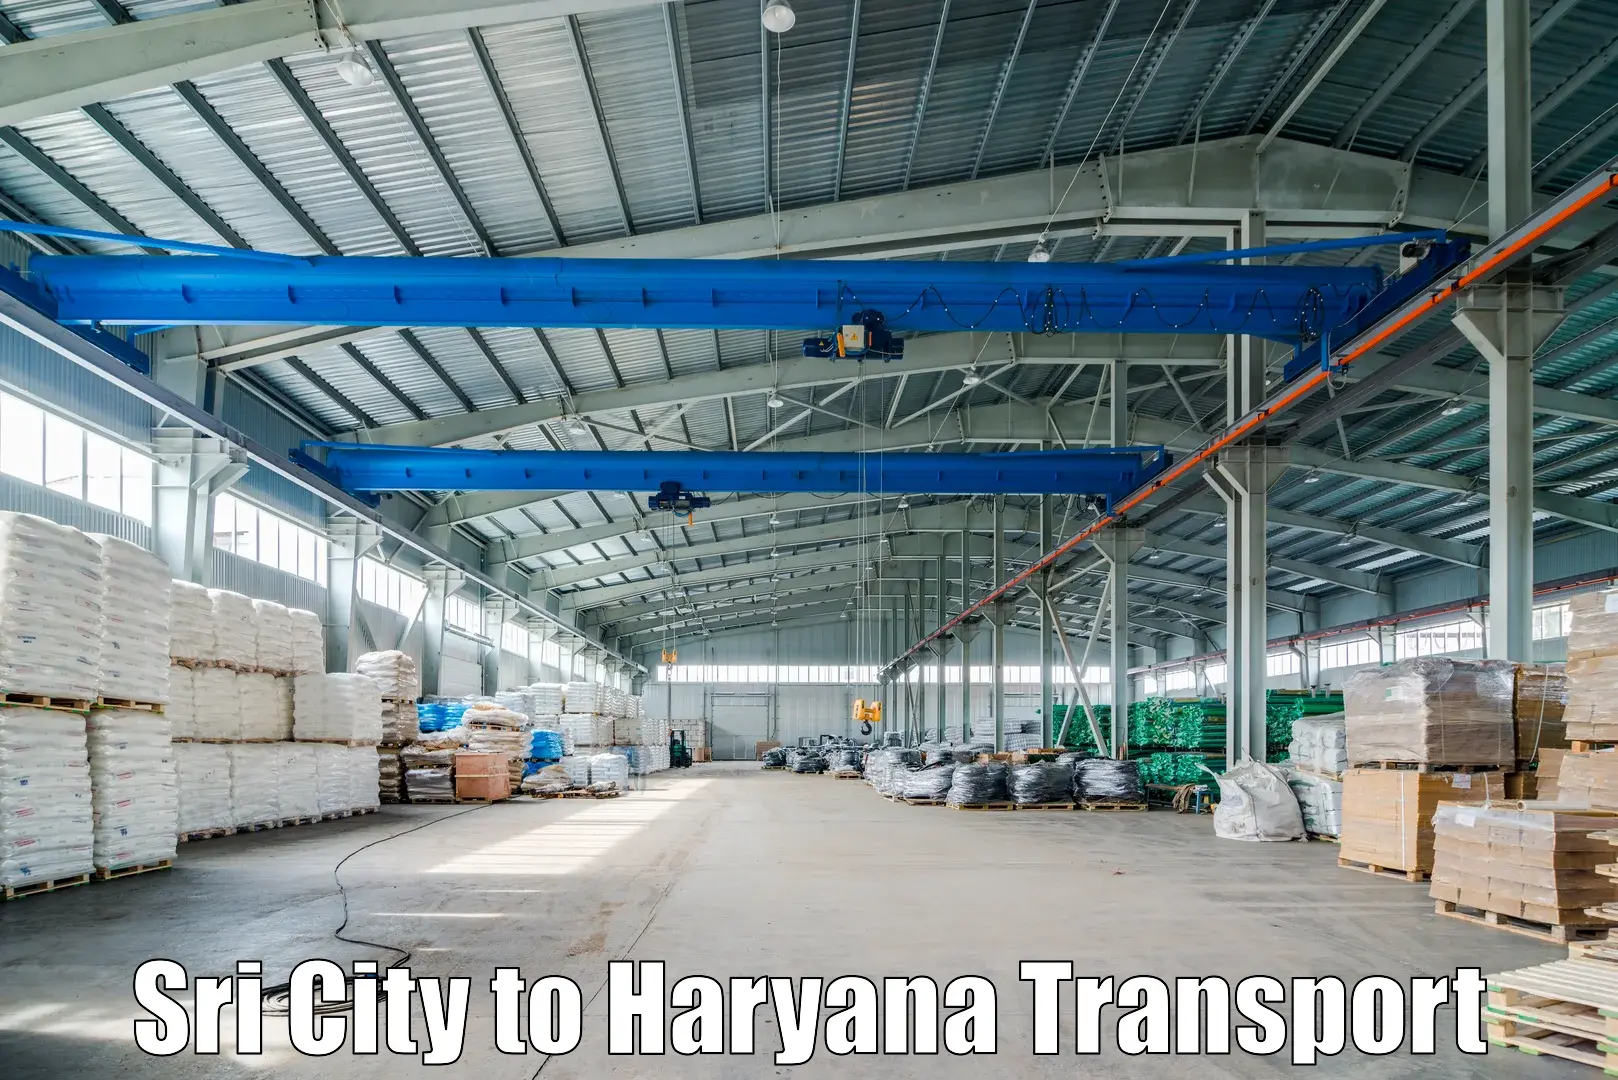 Intercity transport Sri City to Narwana